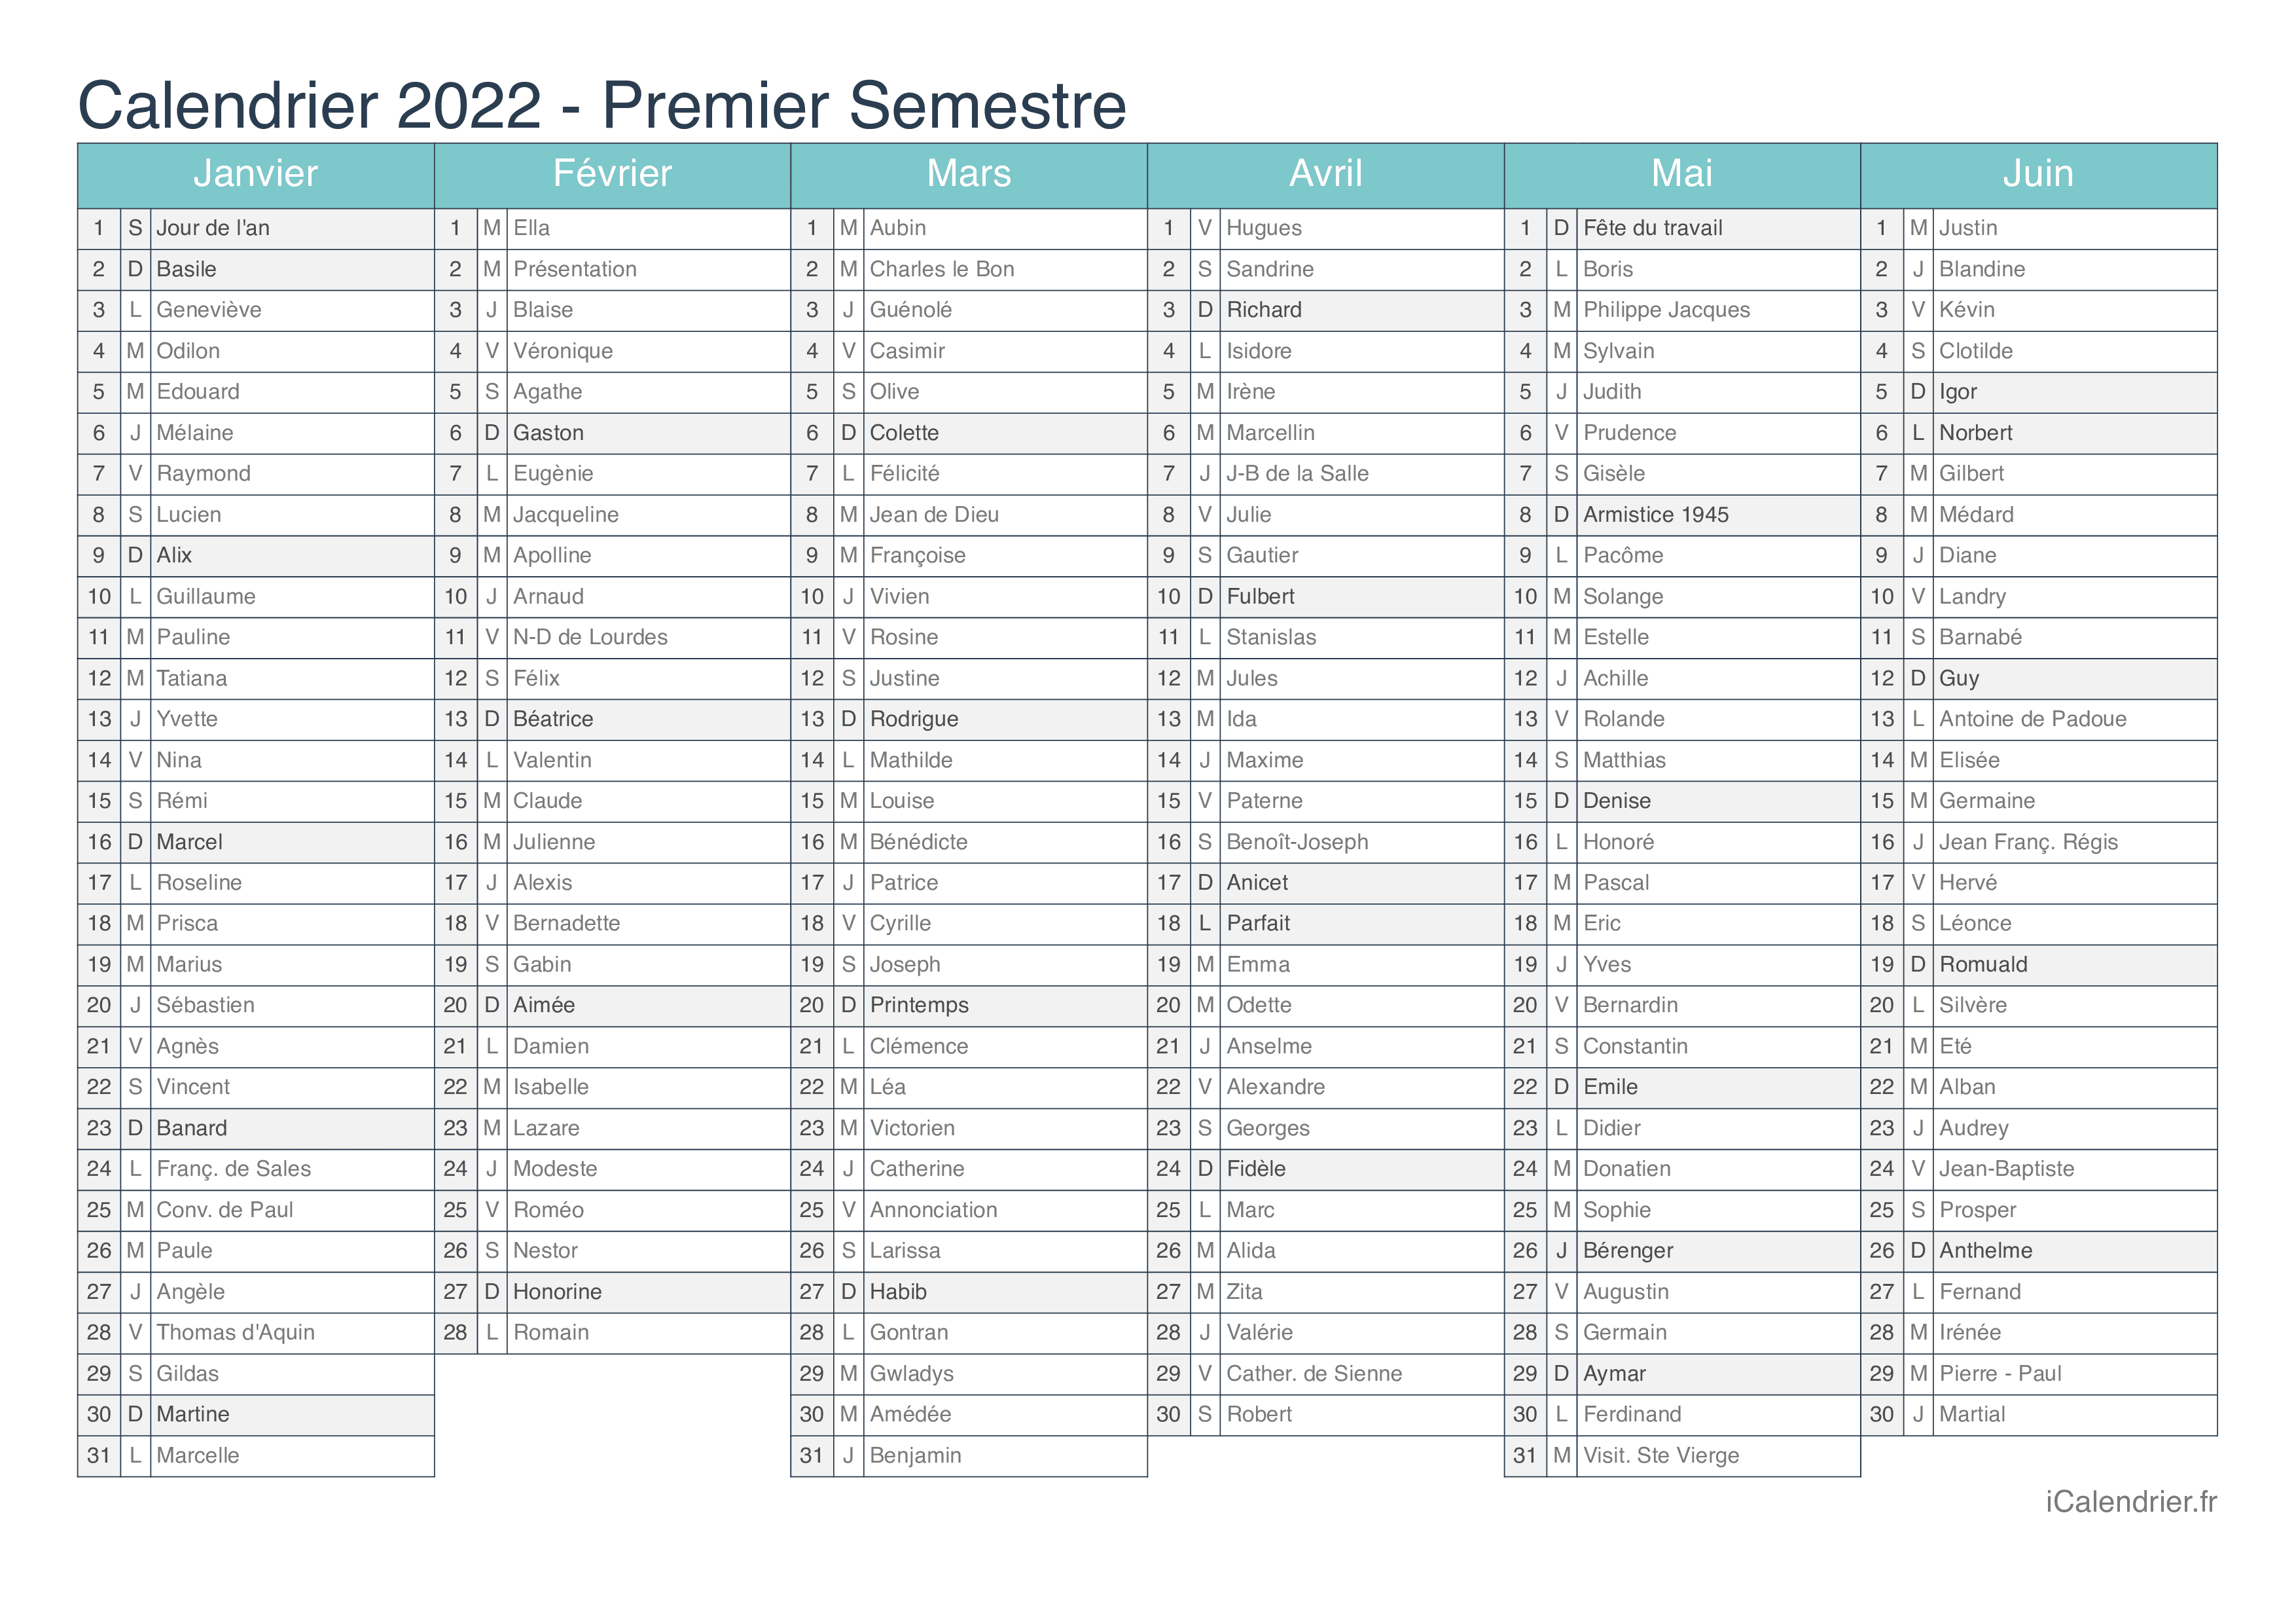 Calendrier Saints 2022 Calendrier 2022 à imprimer PDF et Excel   iCalendrier